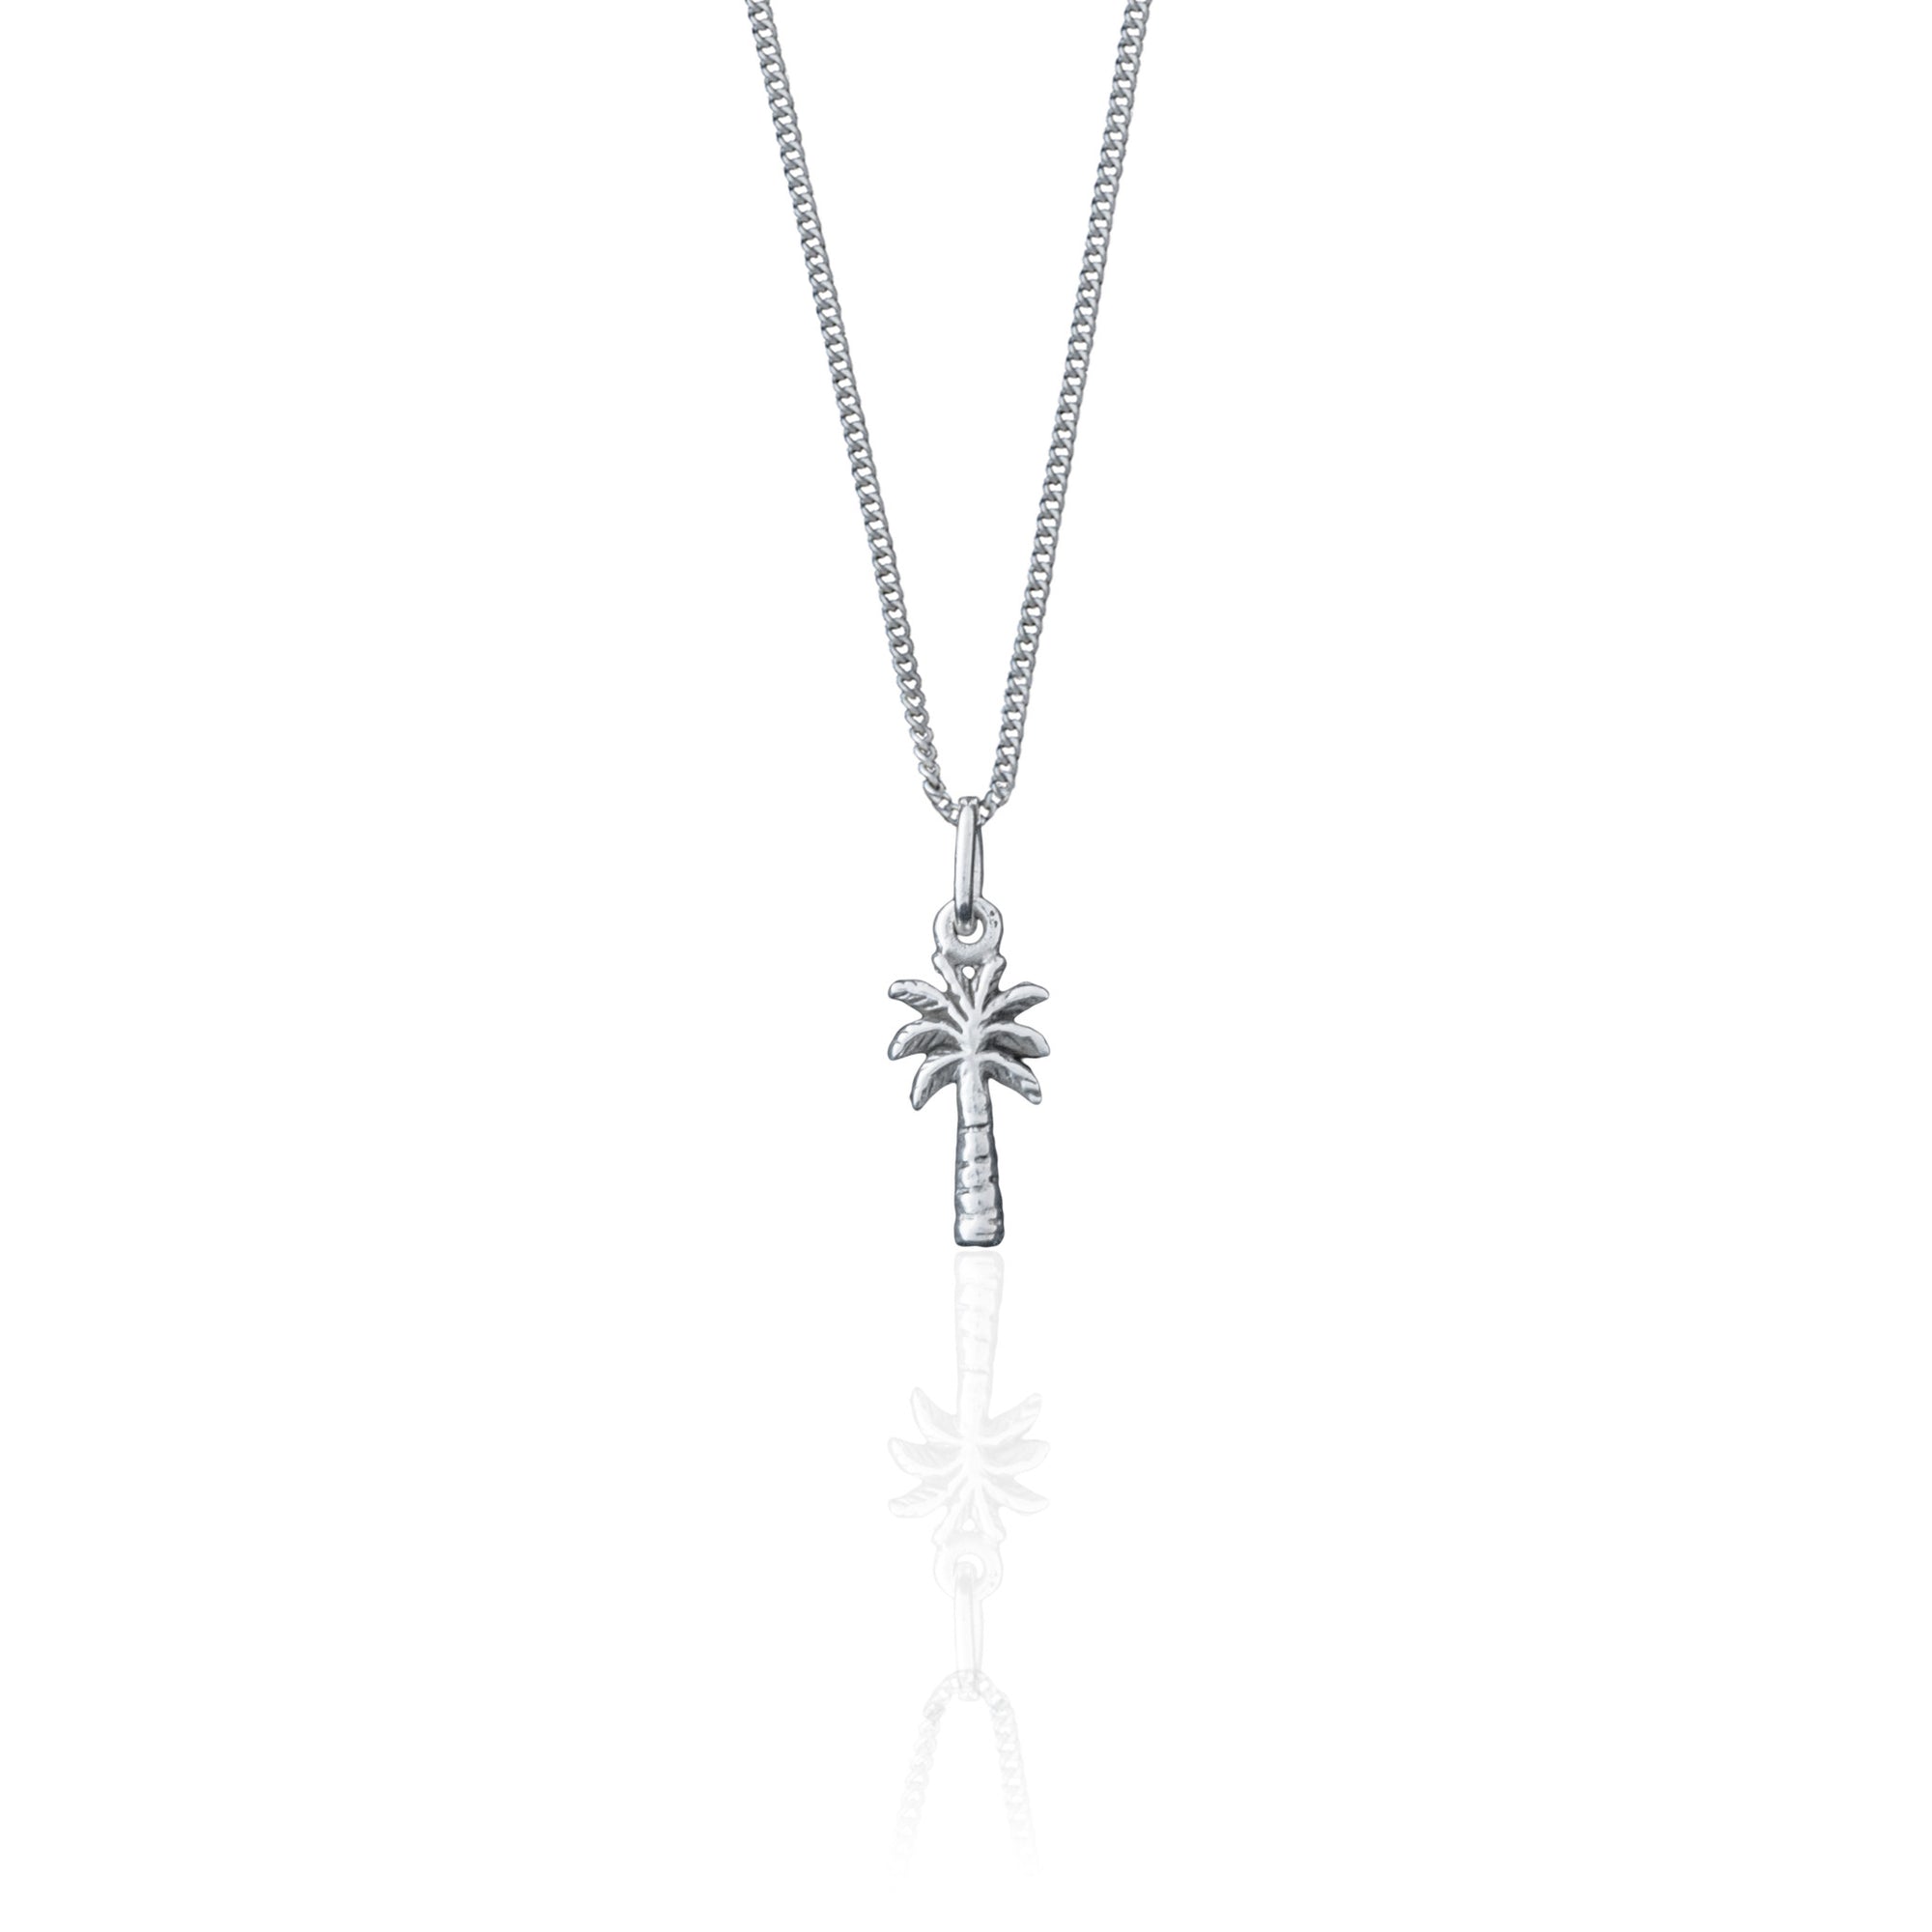 La Luna Rose Palm Springs Charm Necklace - Silver